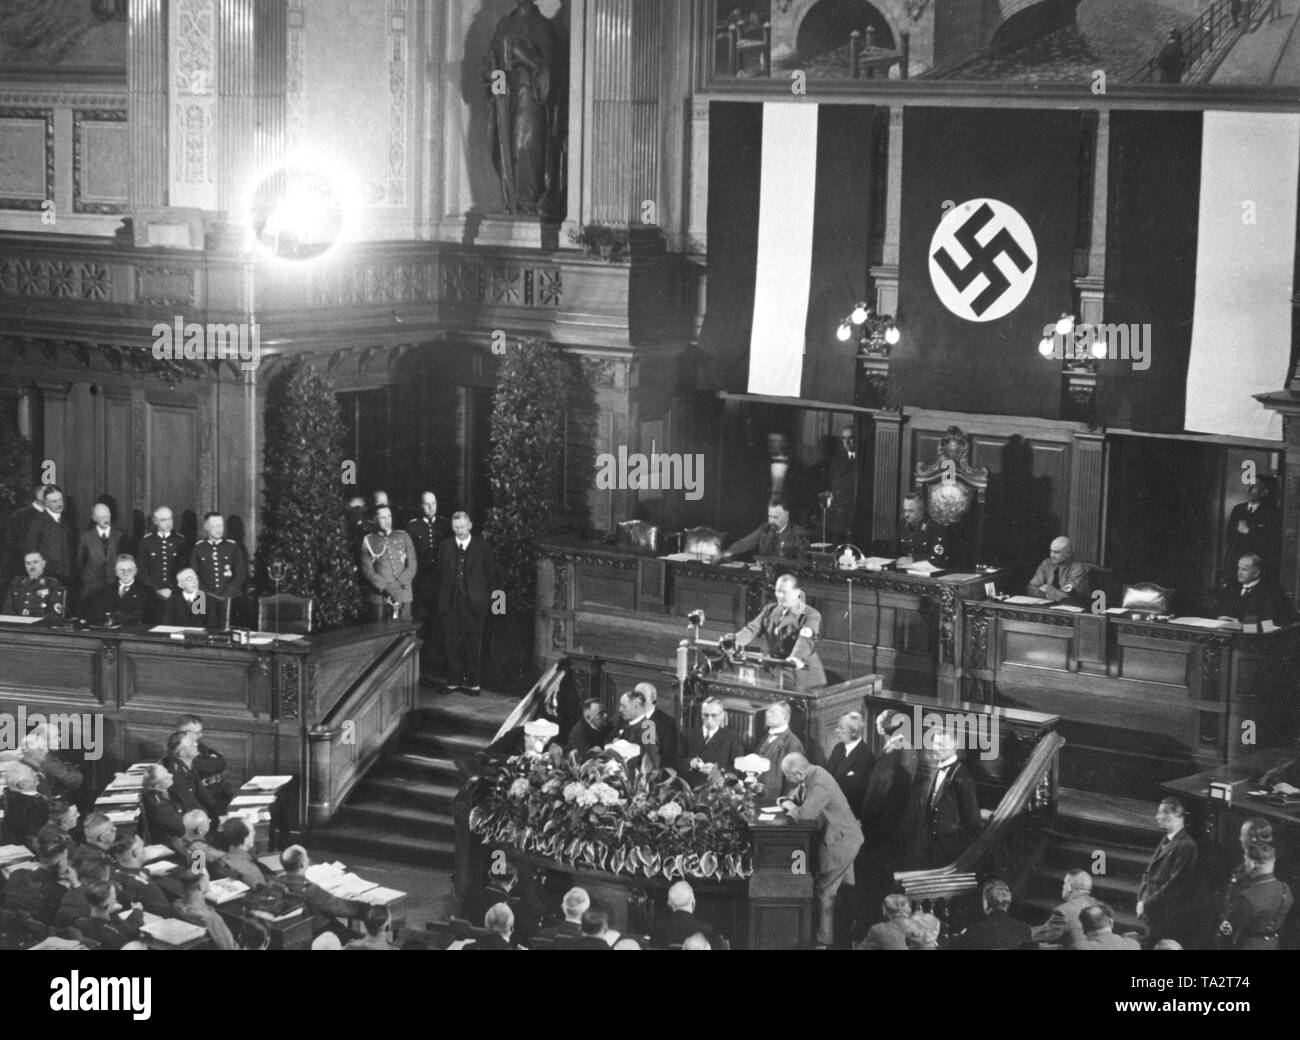 Nella sua ultima riunione del 18 maggio 1933, il Landtag Prussiano, decorato con fiori swastika e nero-e-bianco-bandiere rosse, con l'abilitazione atto votato de facto la sua dissoluzione. La foto mostra il discorso del Ministro prussiano presidente Hermann Goering, dietro di lui sulla poltrona presidenziale il Presidente del Landtag prussiano e il Ministro della giustizia Hanns Kerrl (NSDAP). Seduta a sinistra nella foto sul banco di governo da sinistra a destra: Istruzione e cultura il ministro Dr. Bernhard ruggine (NSDAP, con fascia da braccio con la svastica), il dottor Johannes Popitz (indipendente) e del lavoro e il ministro dell'economia, il dott. Foto Stock